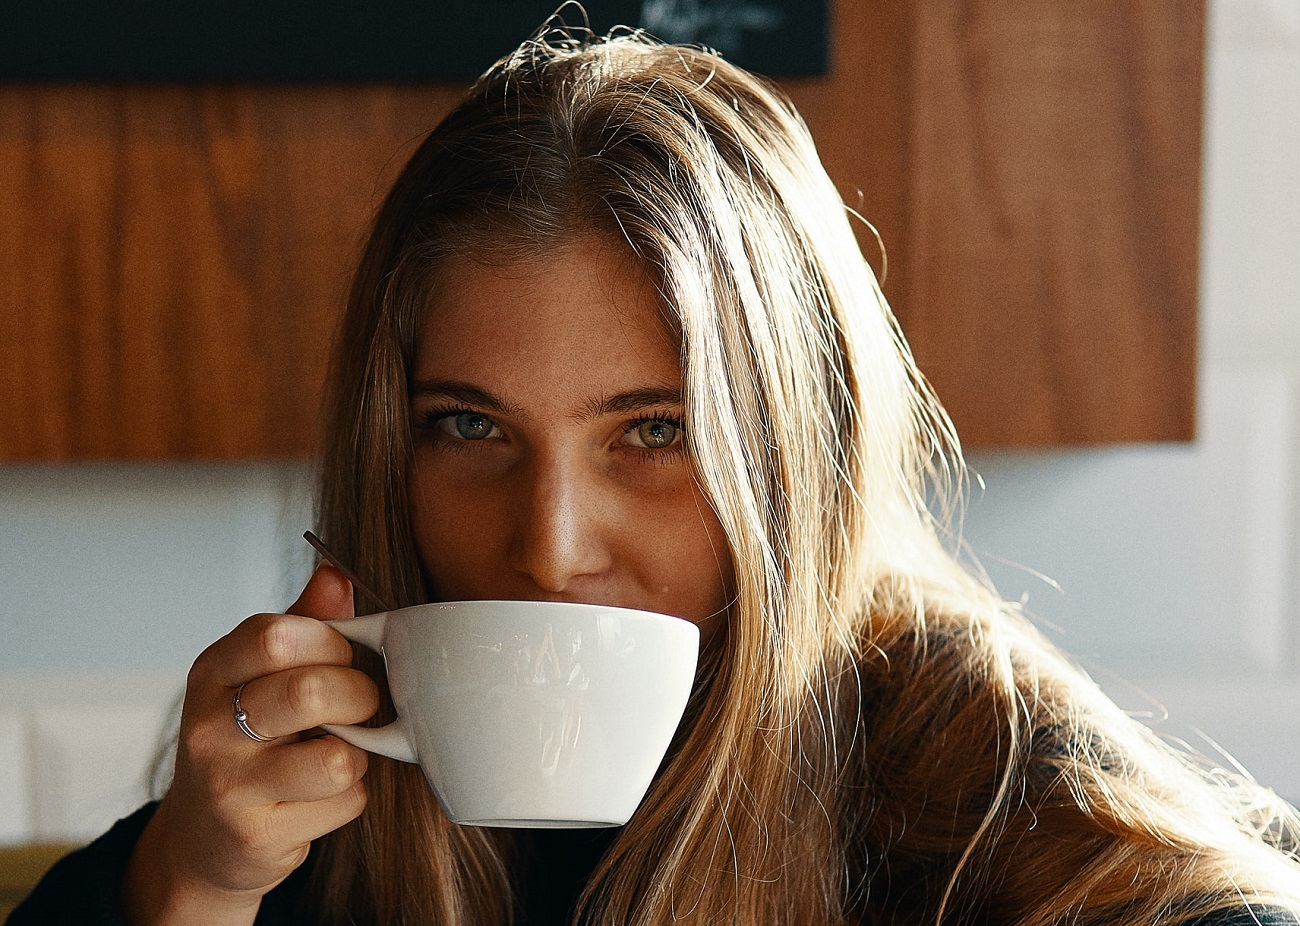 Chi beve almeno 1 caffè al giorno si muove di più ma dorme meno